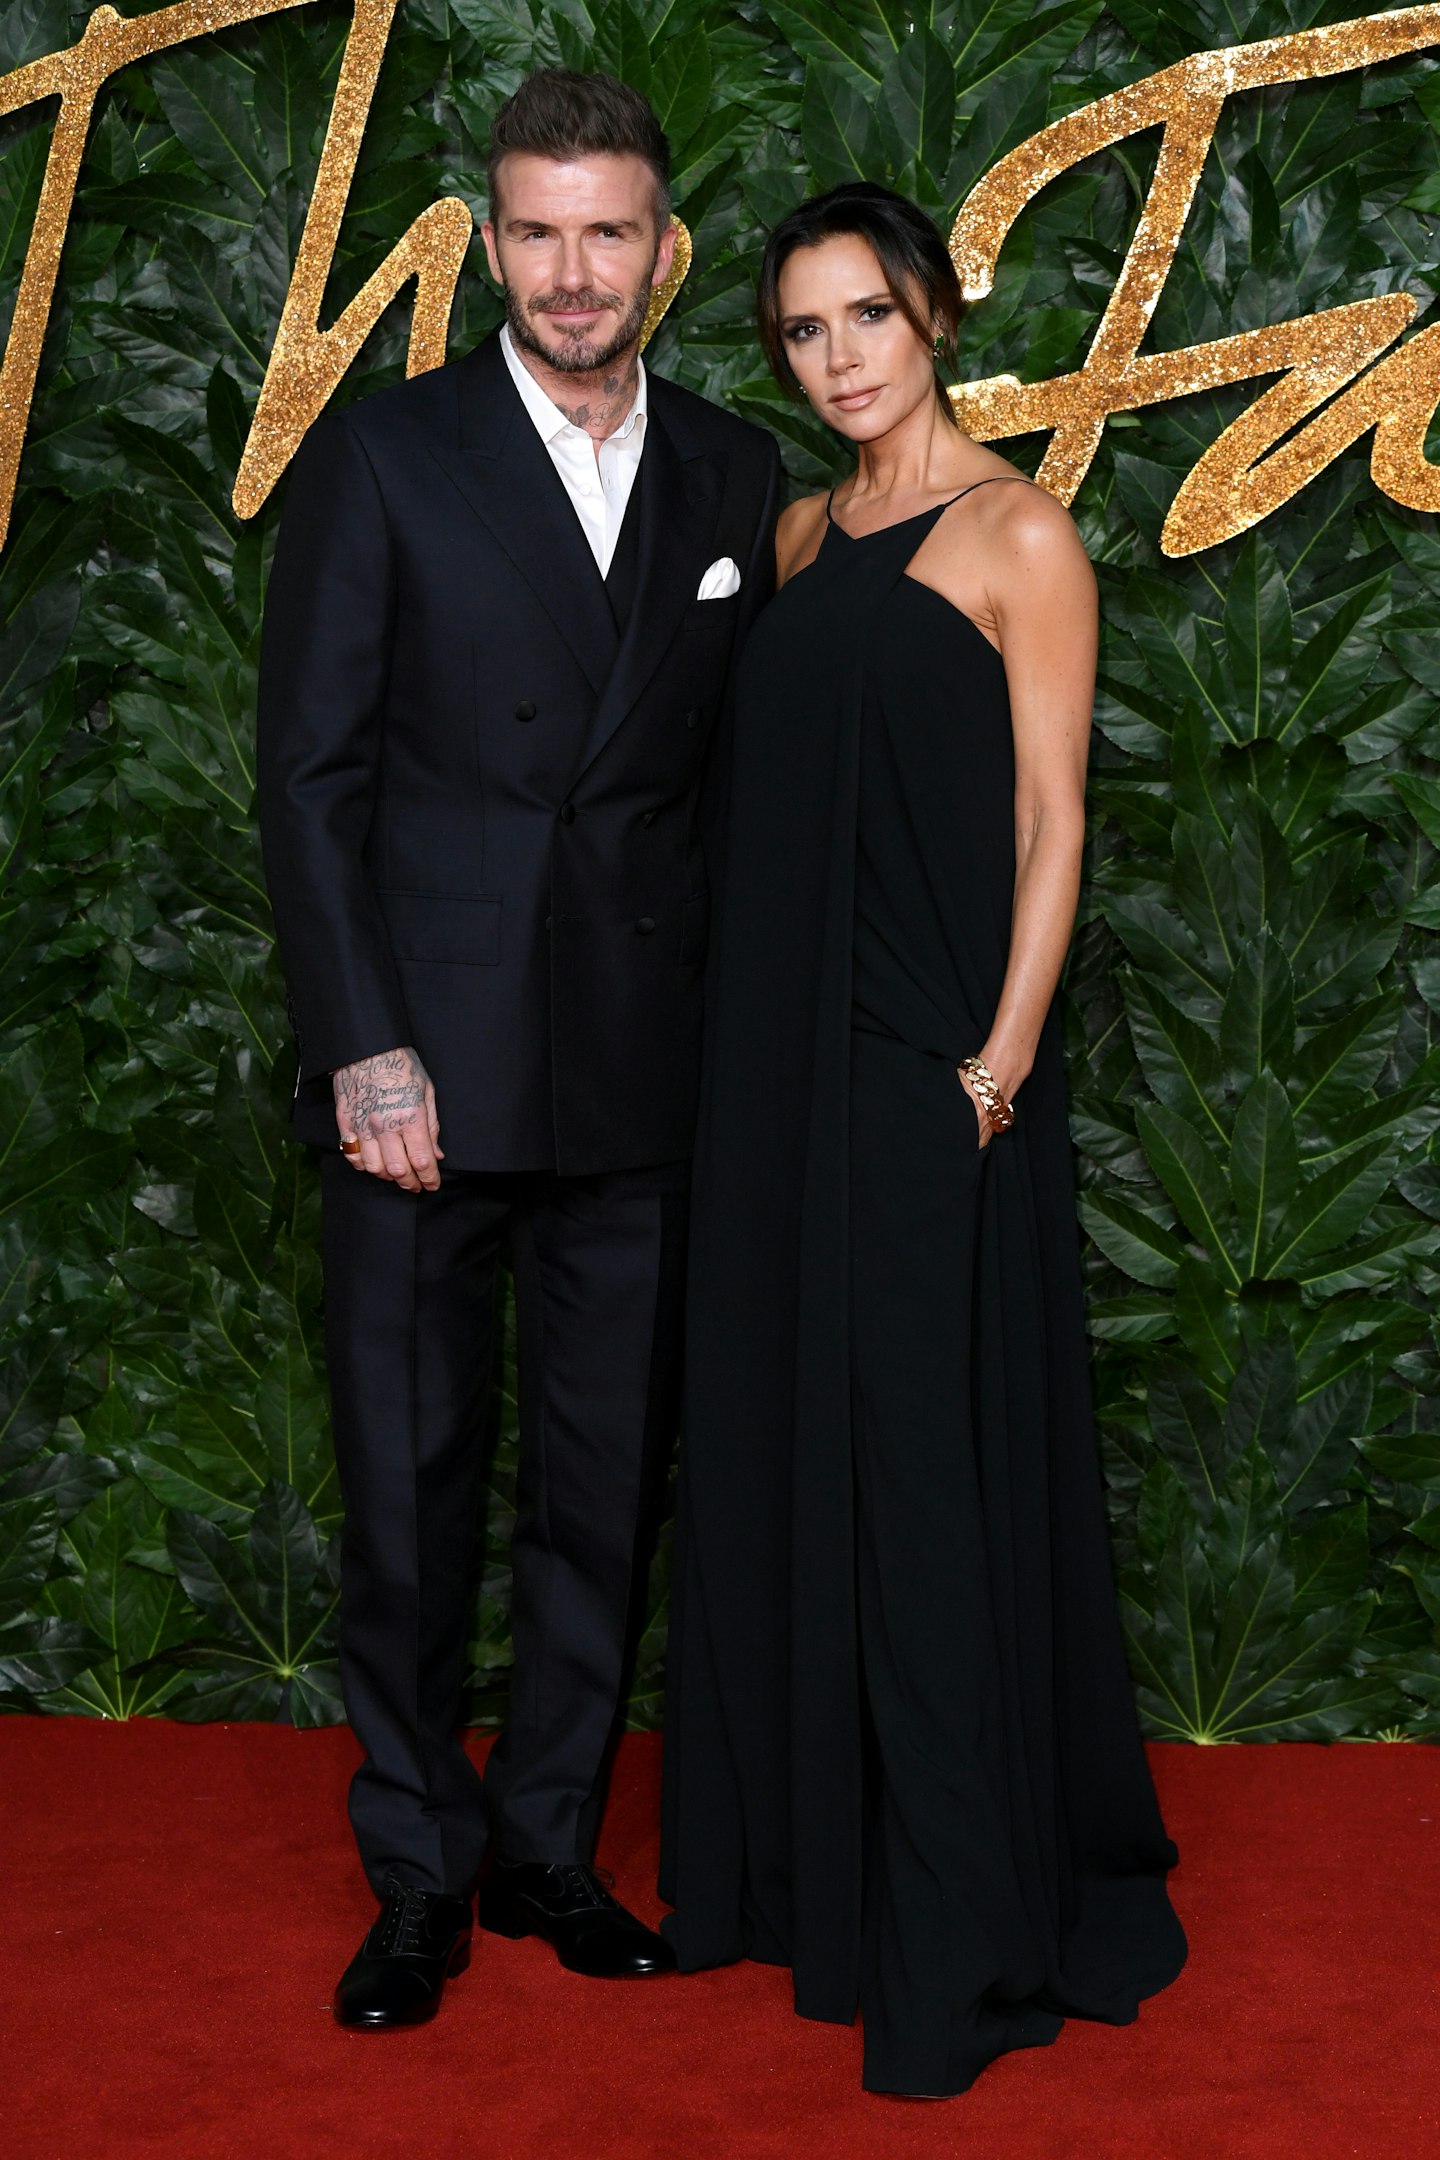 David and Victoria Beckham at The Fashion Awards 2018